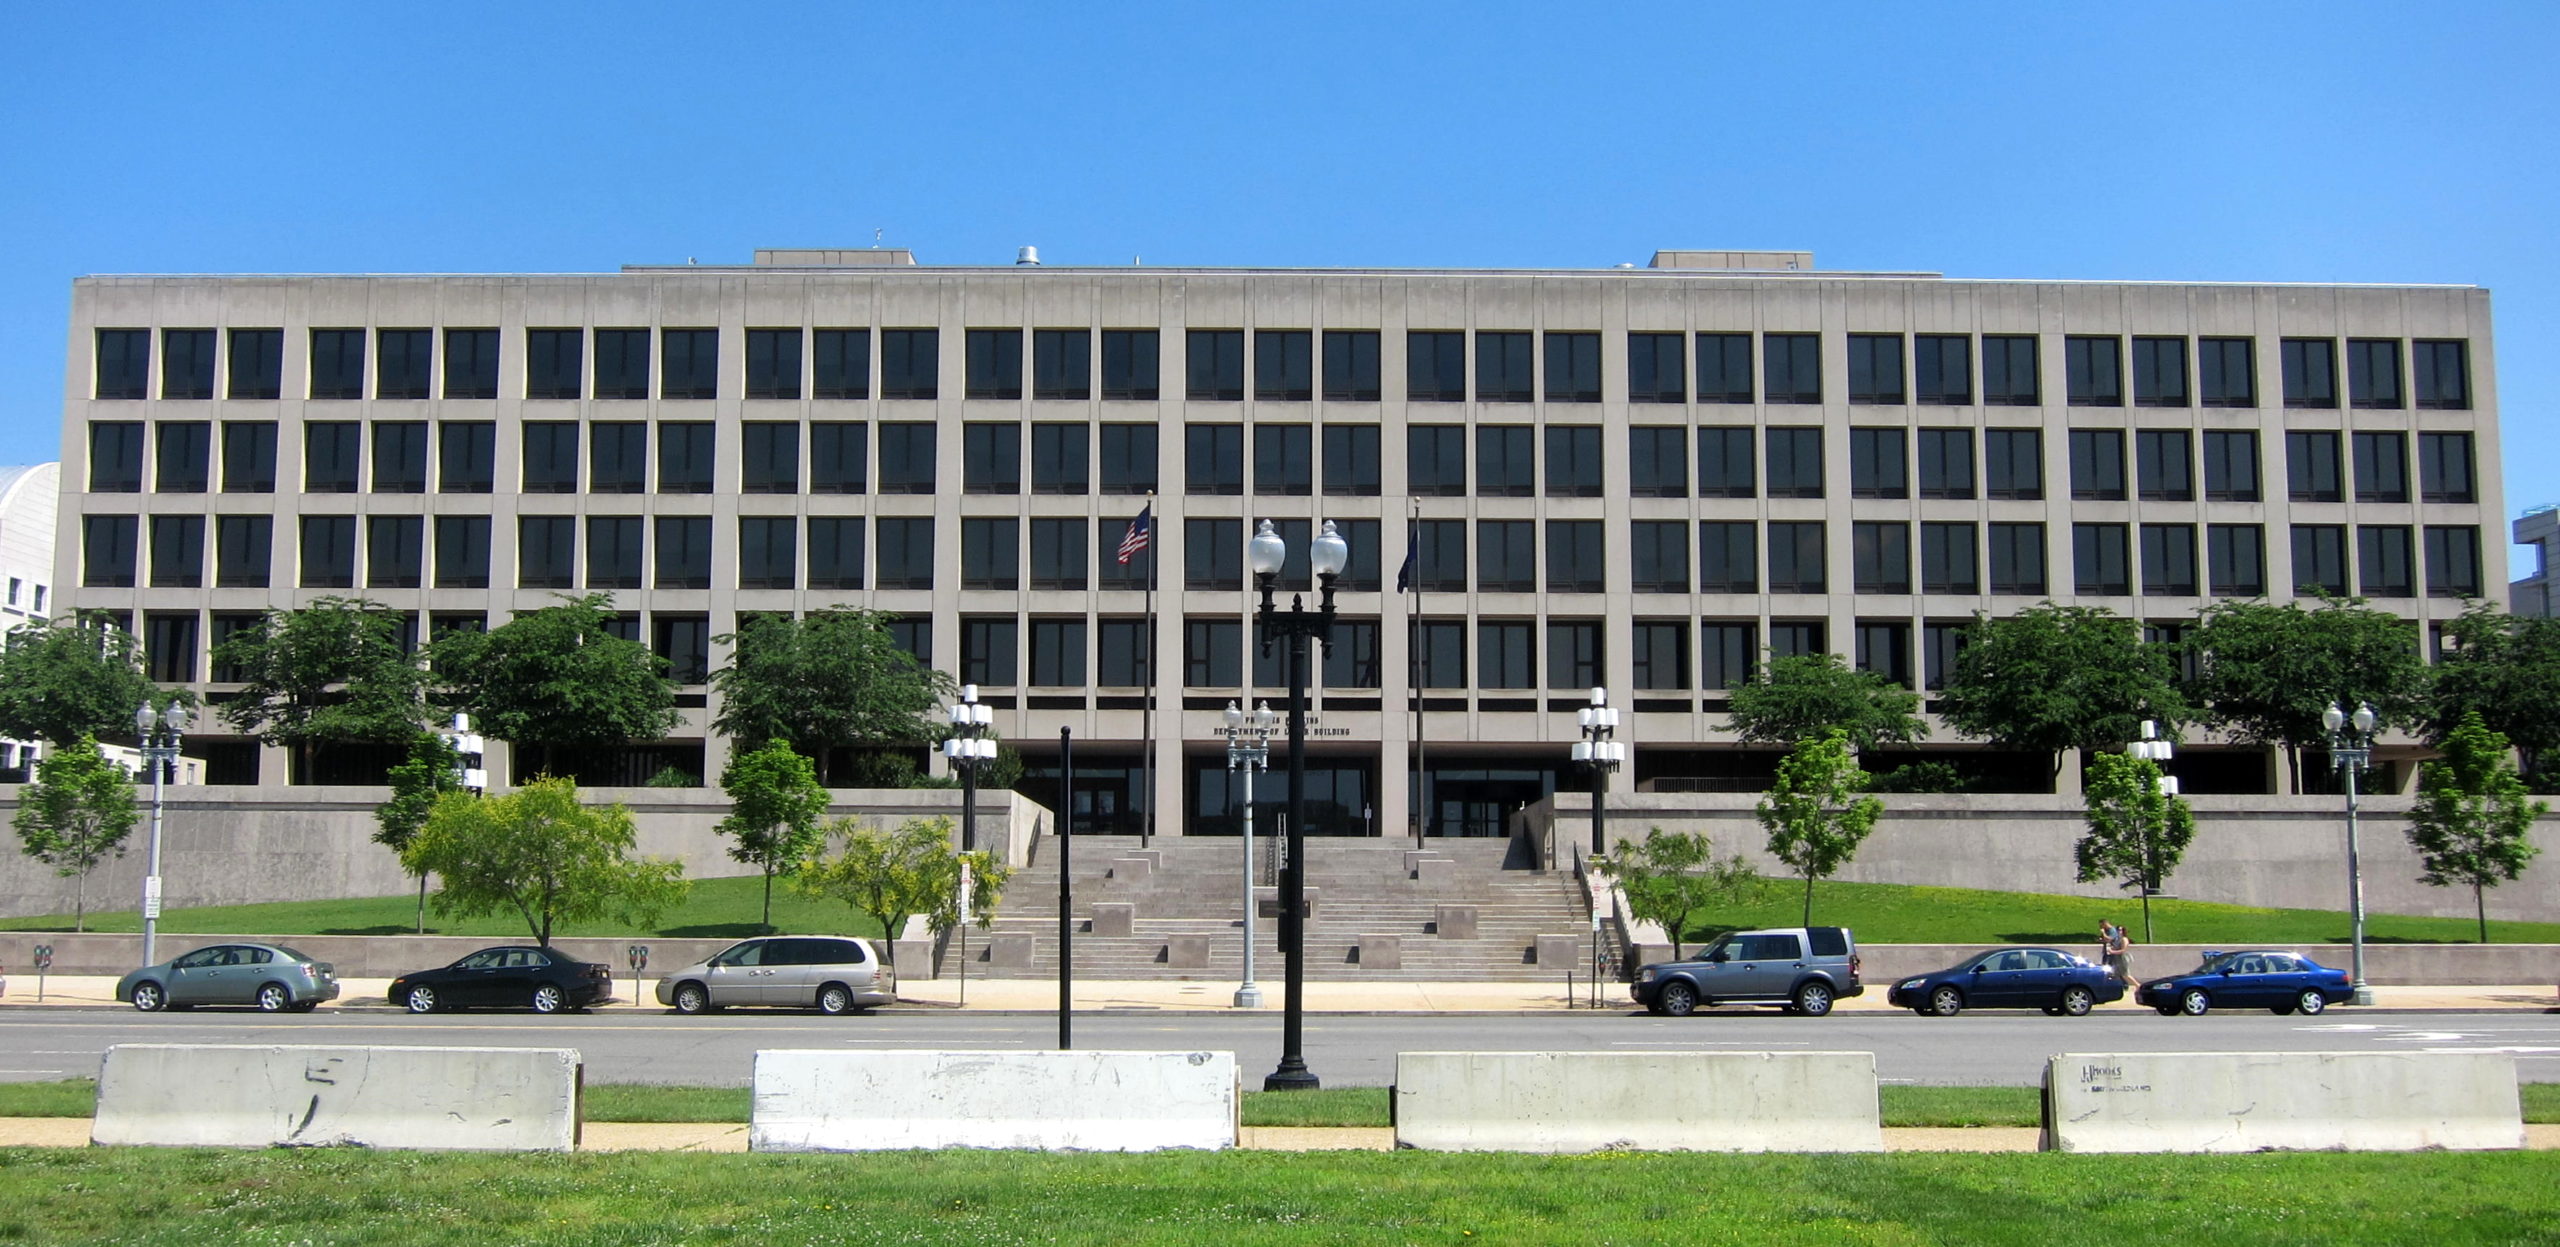 U.S. Department of Labor Frances Perkins Building